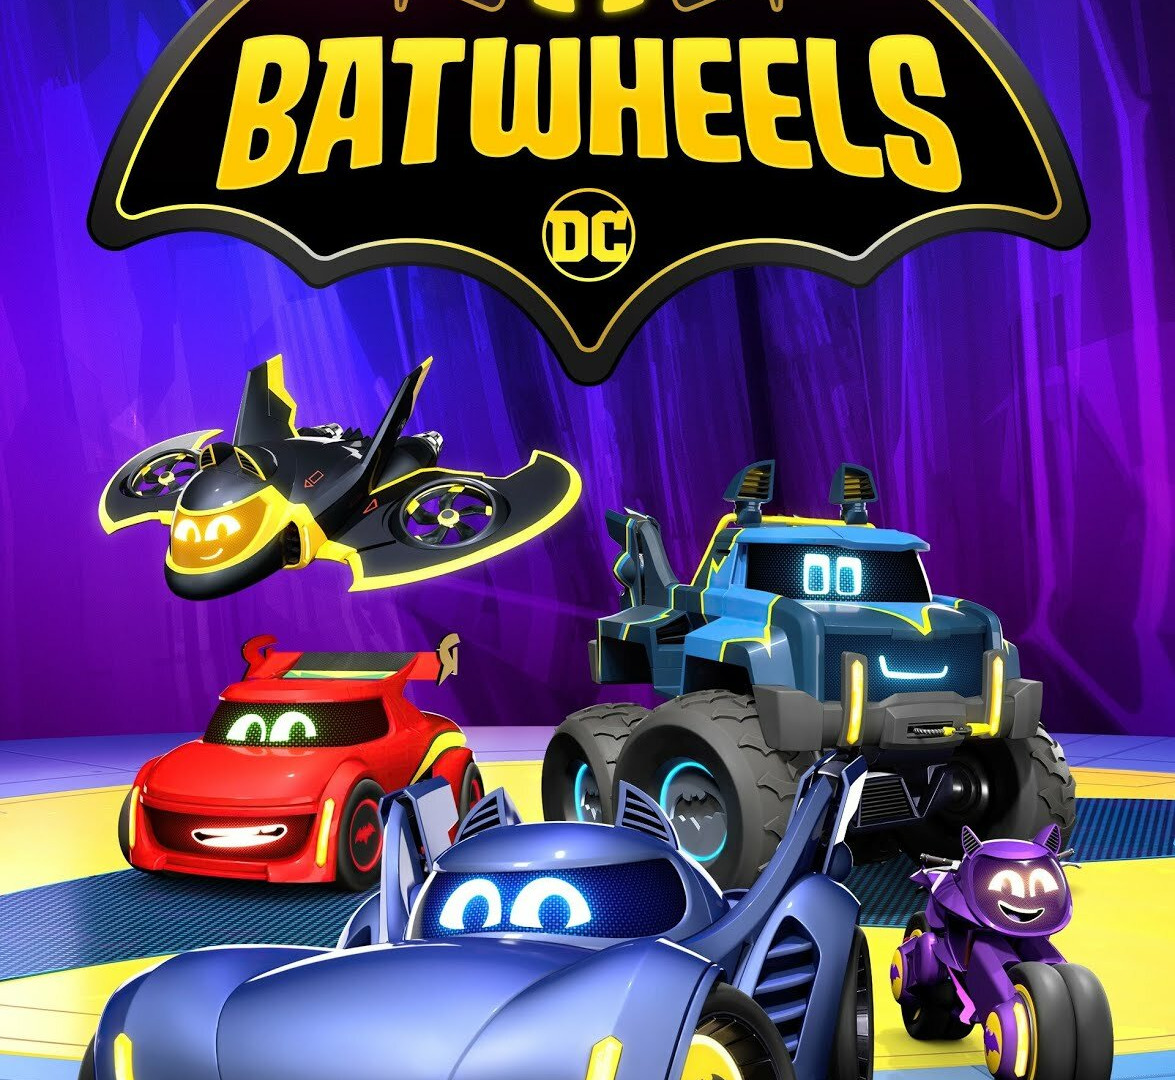 Show Meet the Batwheels